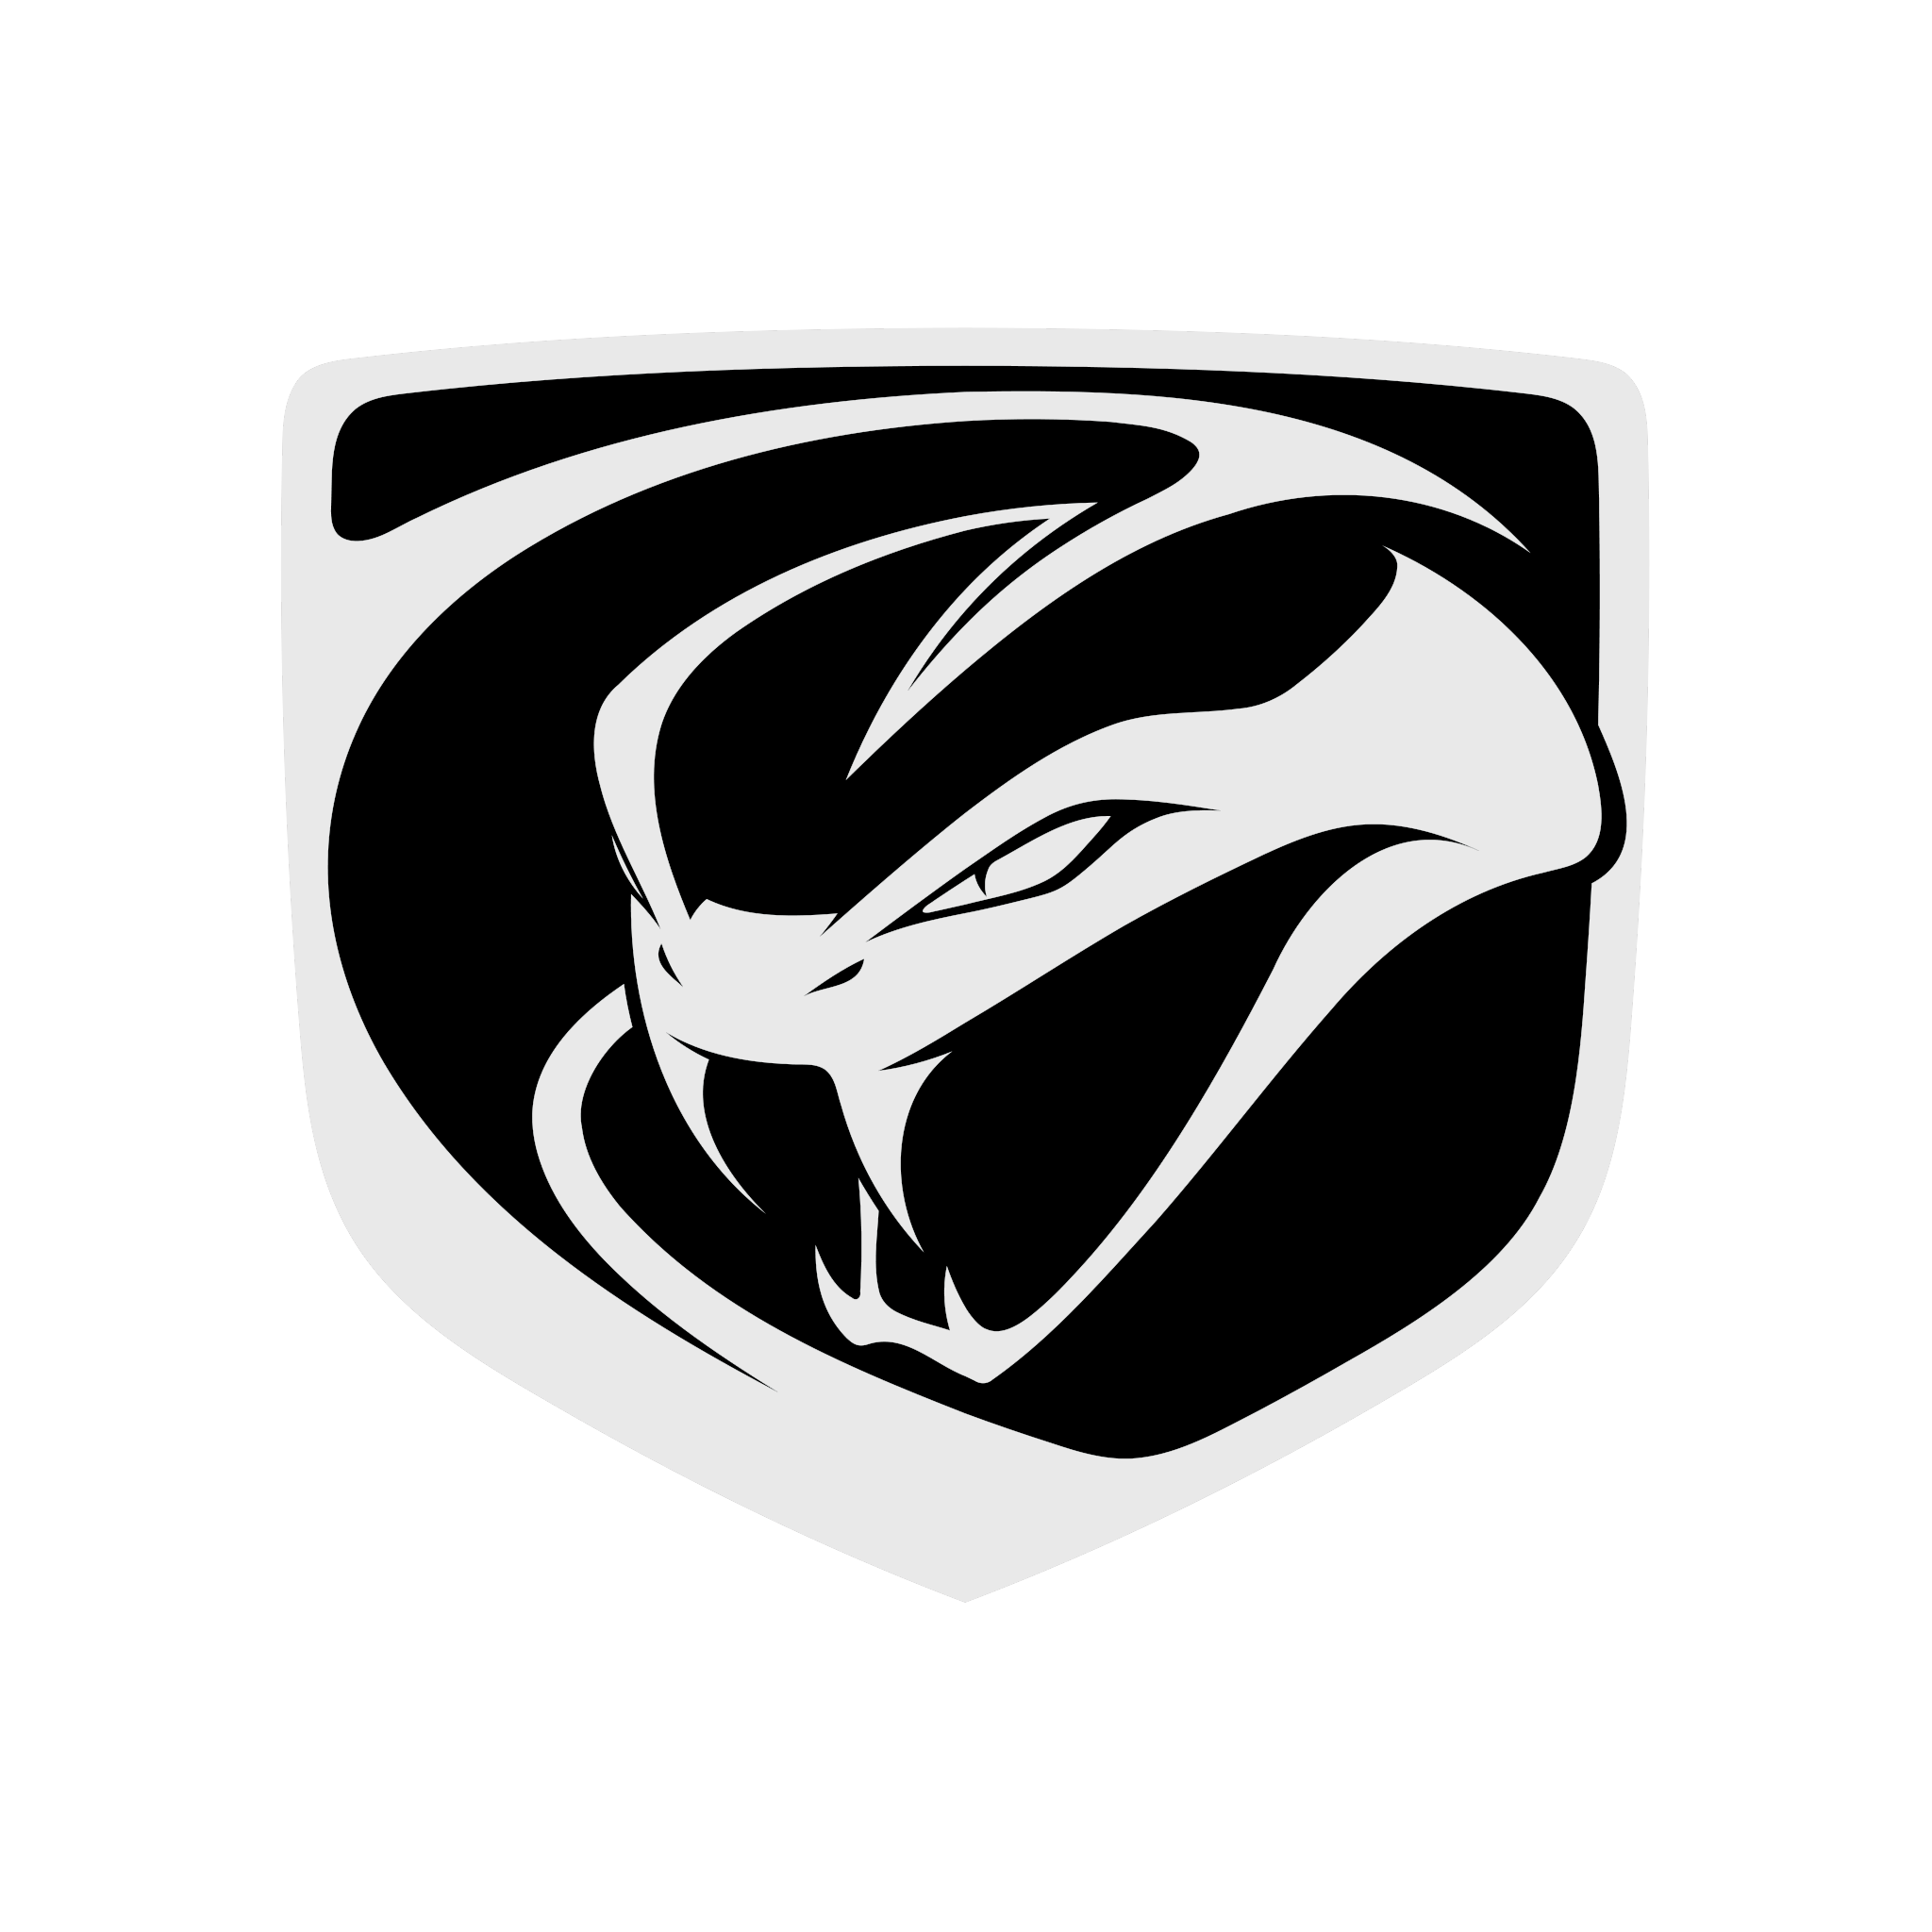 Dodge Viper logo, HD Png, Information | Carlogos.org